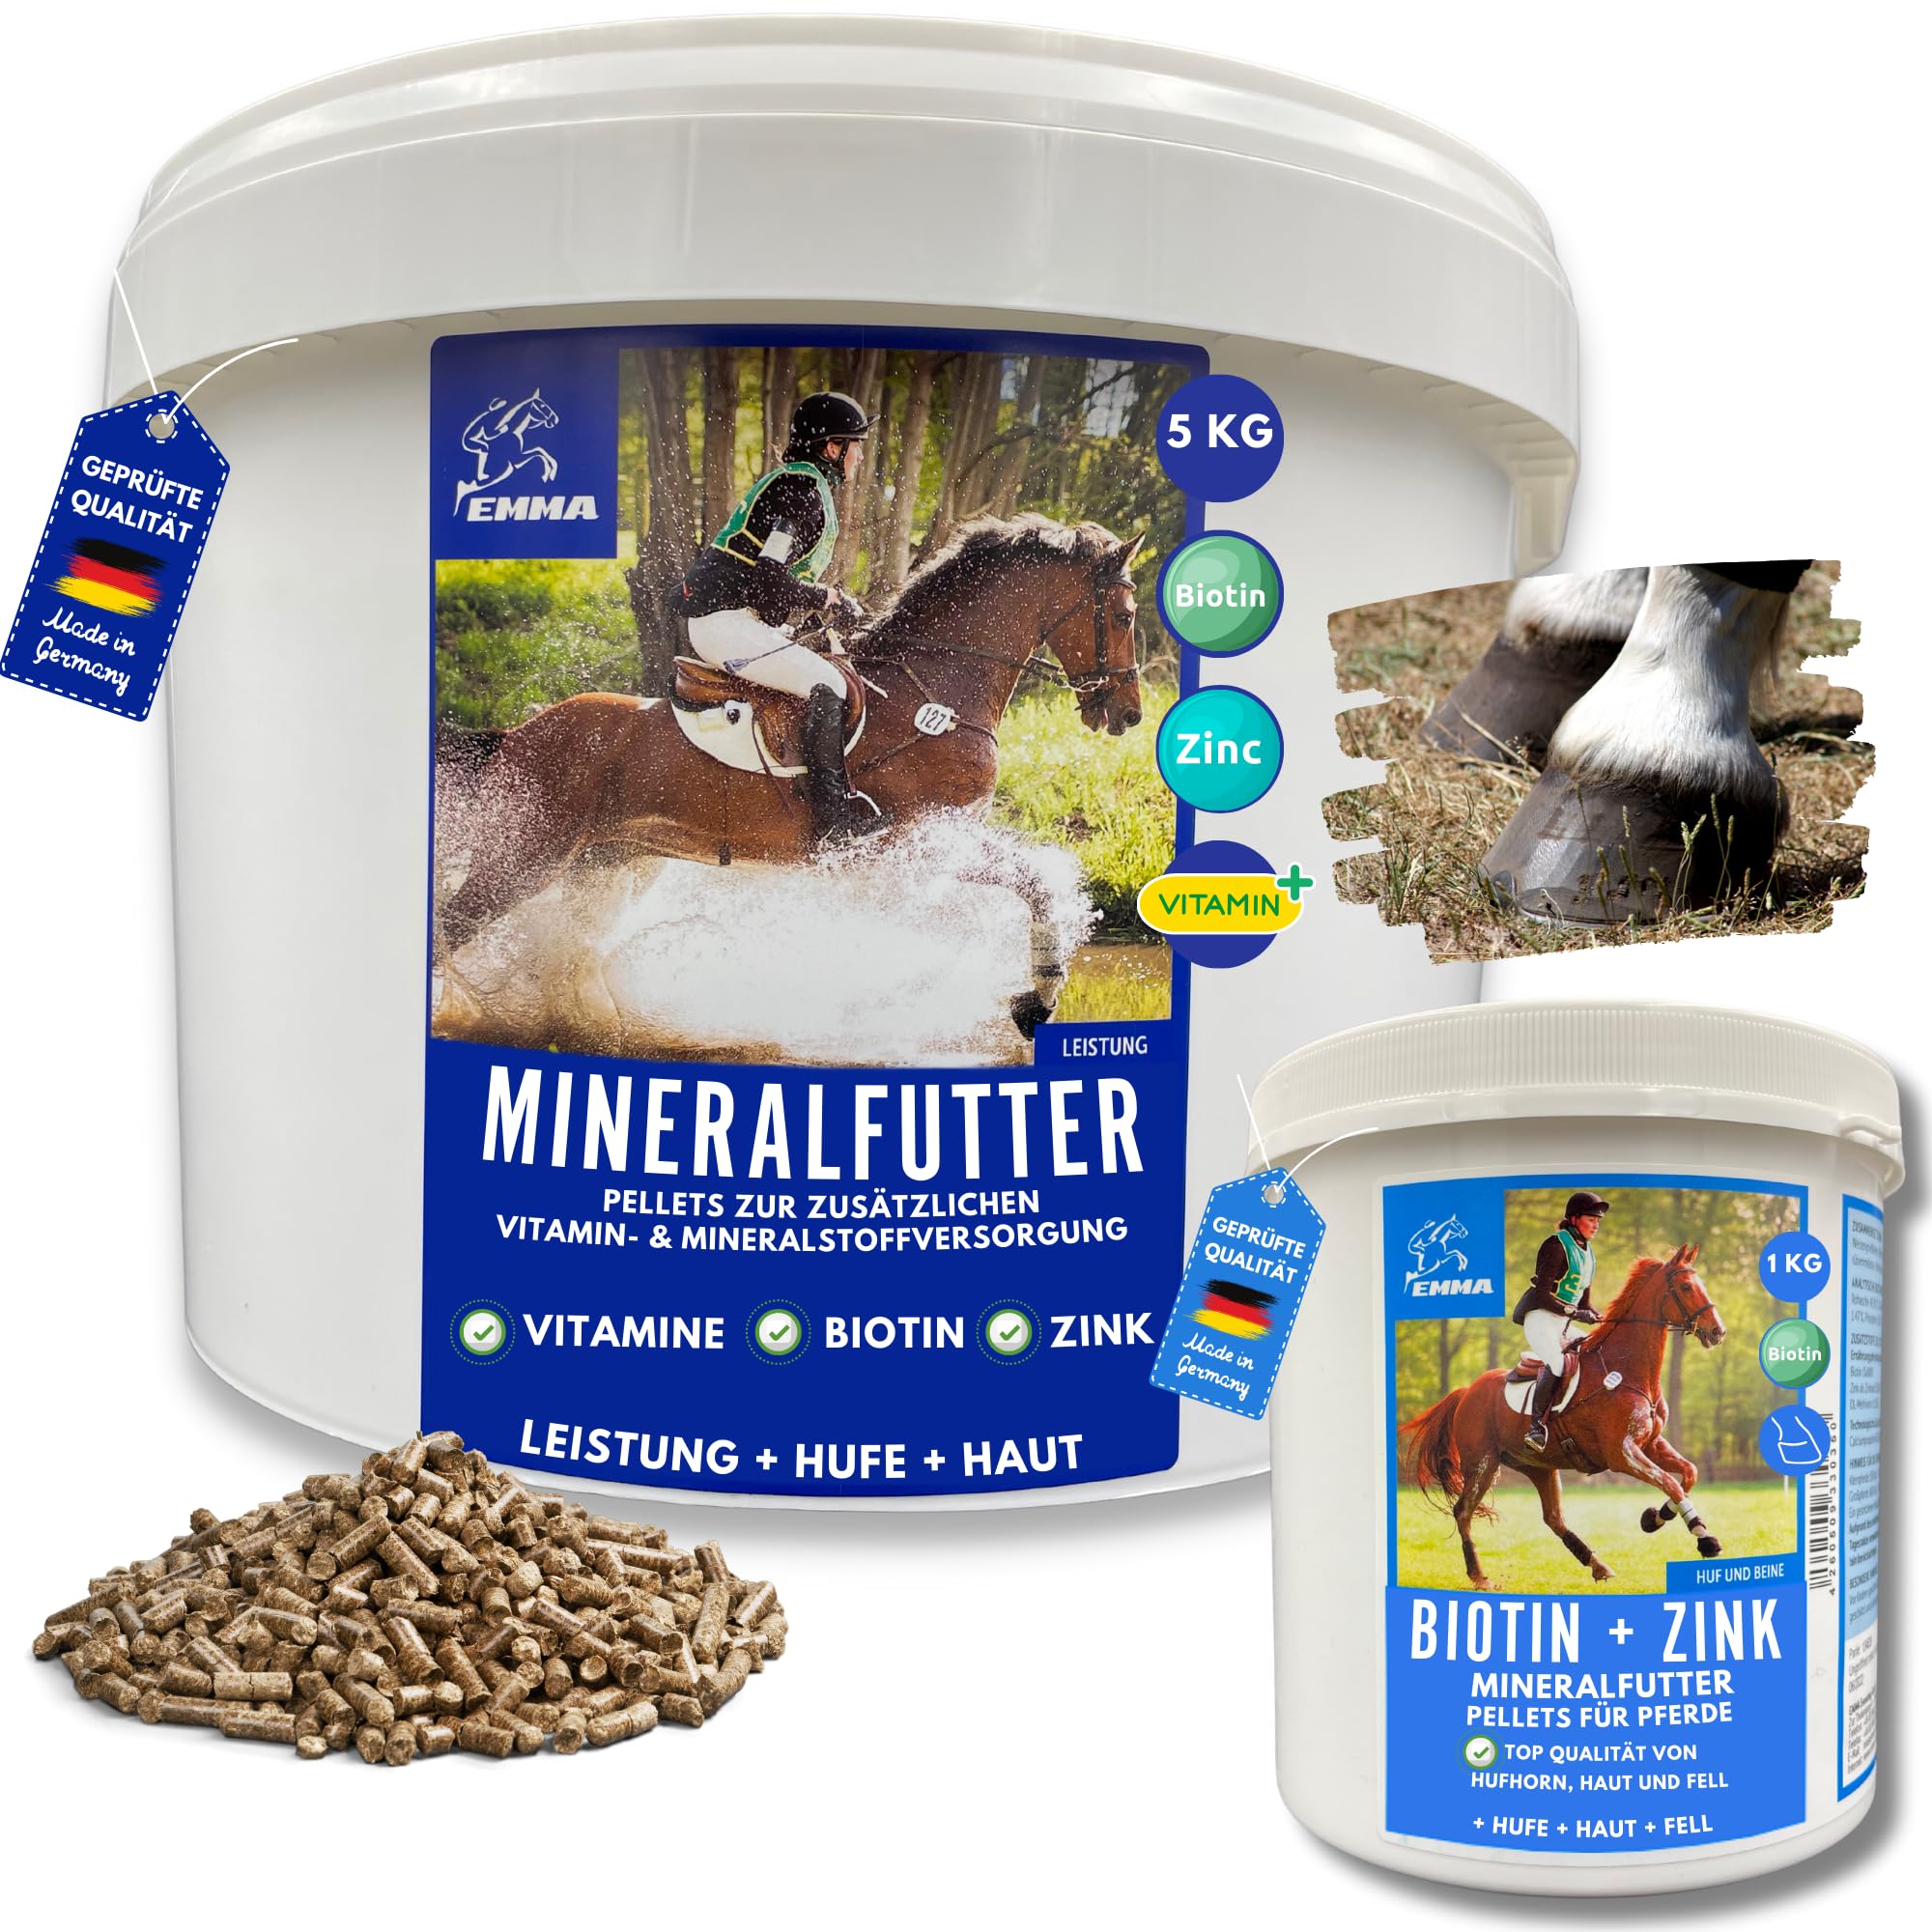 Mineralfutter Pferde + Biotin + Zink für Pferde 5Kg 1Kg hochdosiert - Biotin-Pellets komplex für Hufe Haut Haare Fell Plus Zink für gesunde Hufe unterstützt Hufwachstum Hornqualität Hufqualität